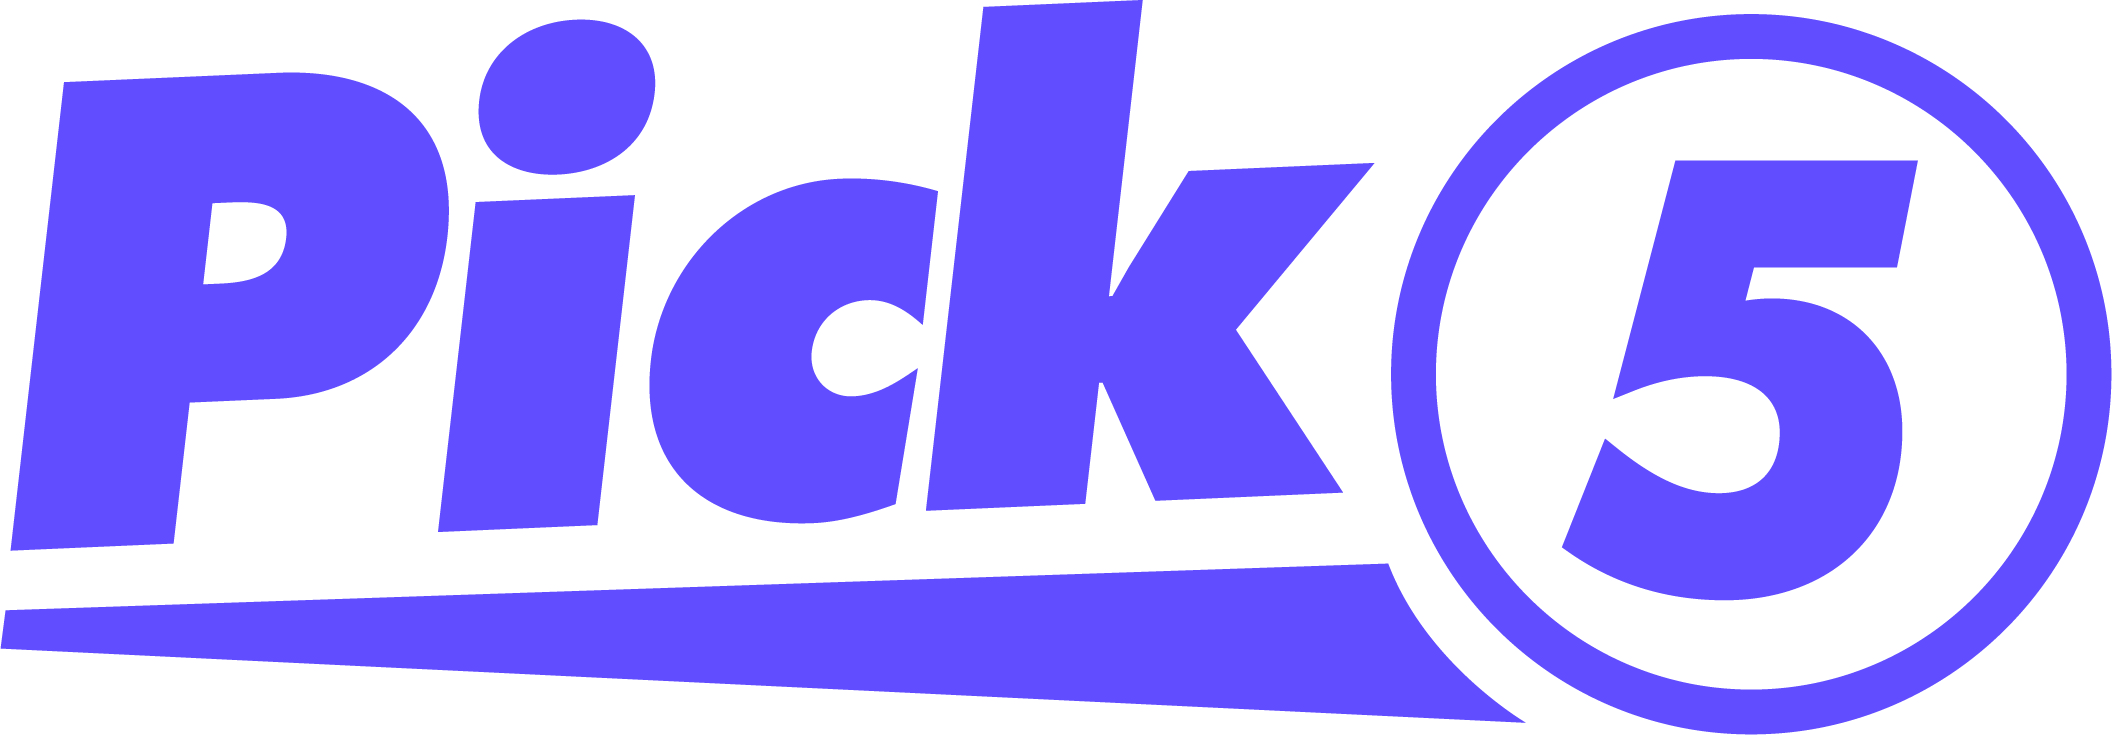 Pick 5 game logo